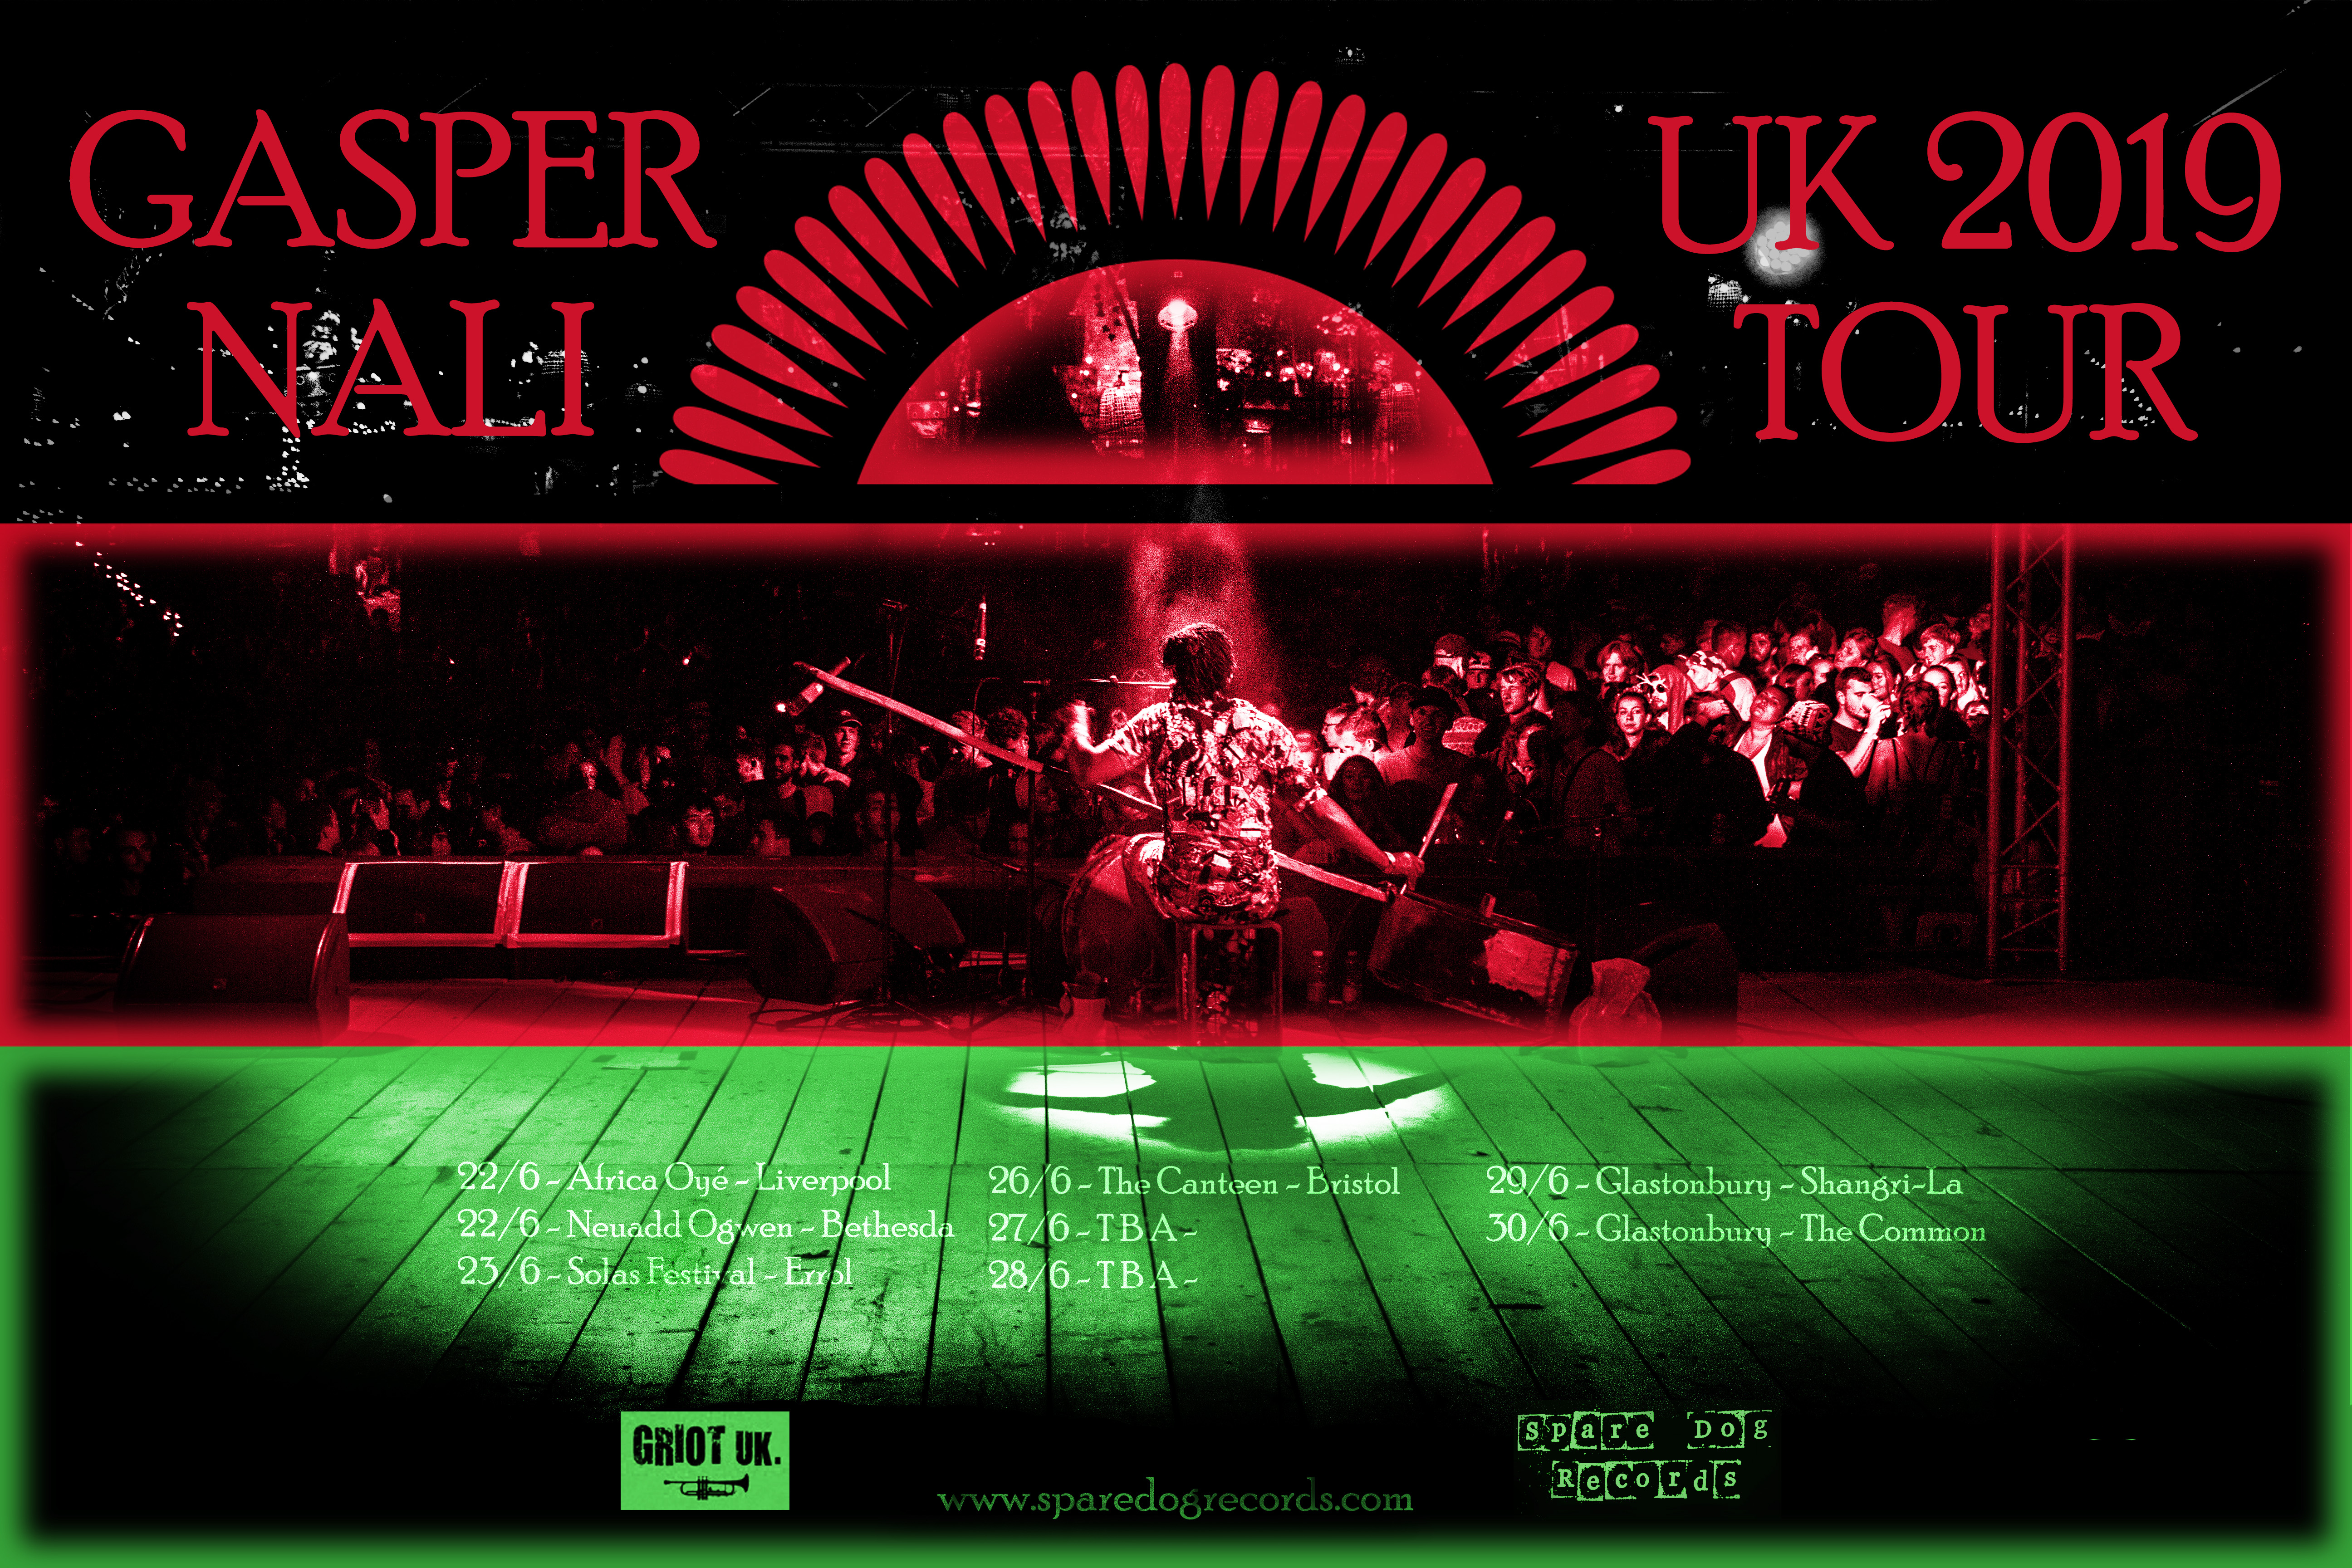 GASPER NALI 2019 UK TOUR